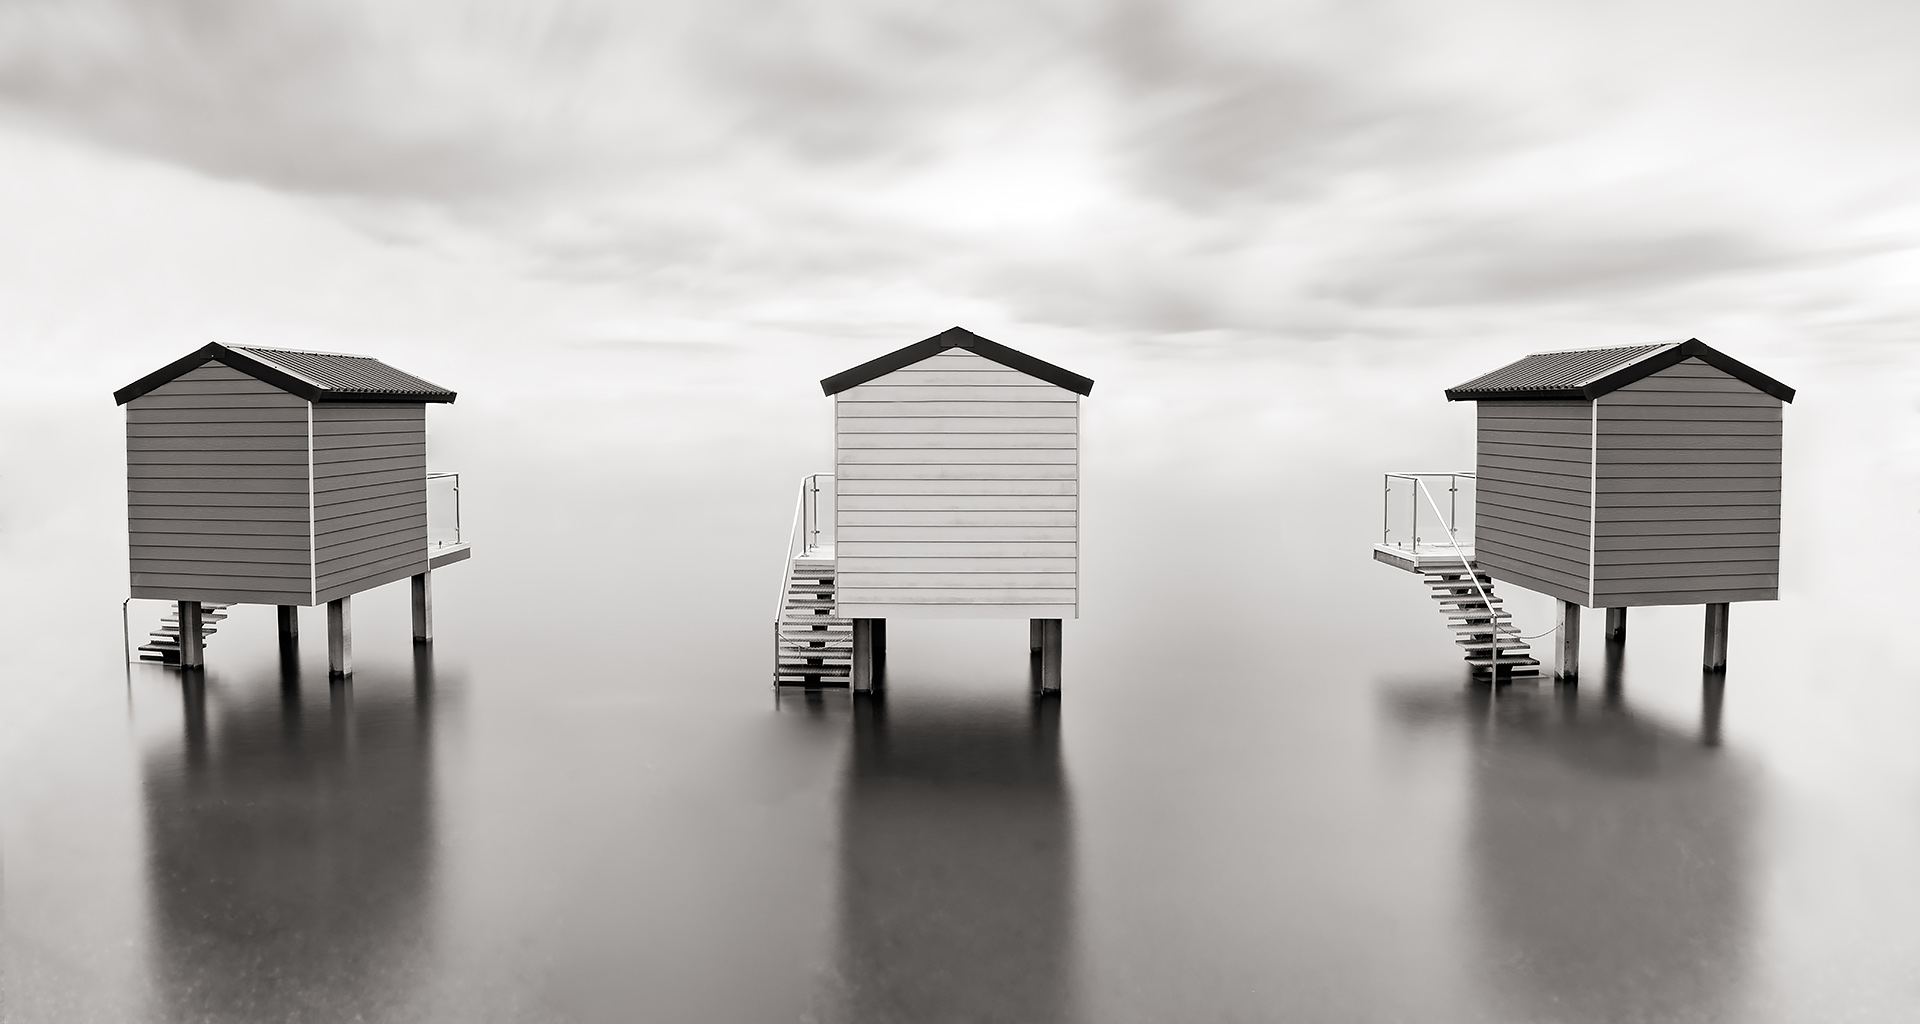 Maldon beach huts